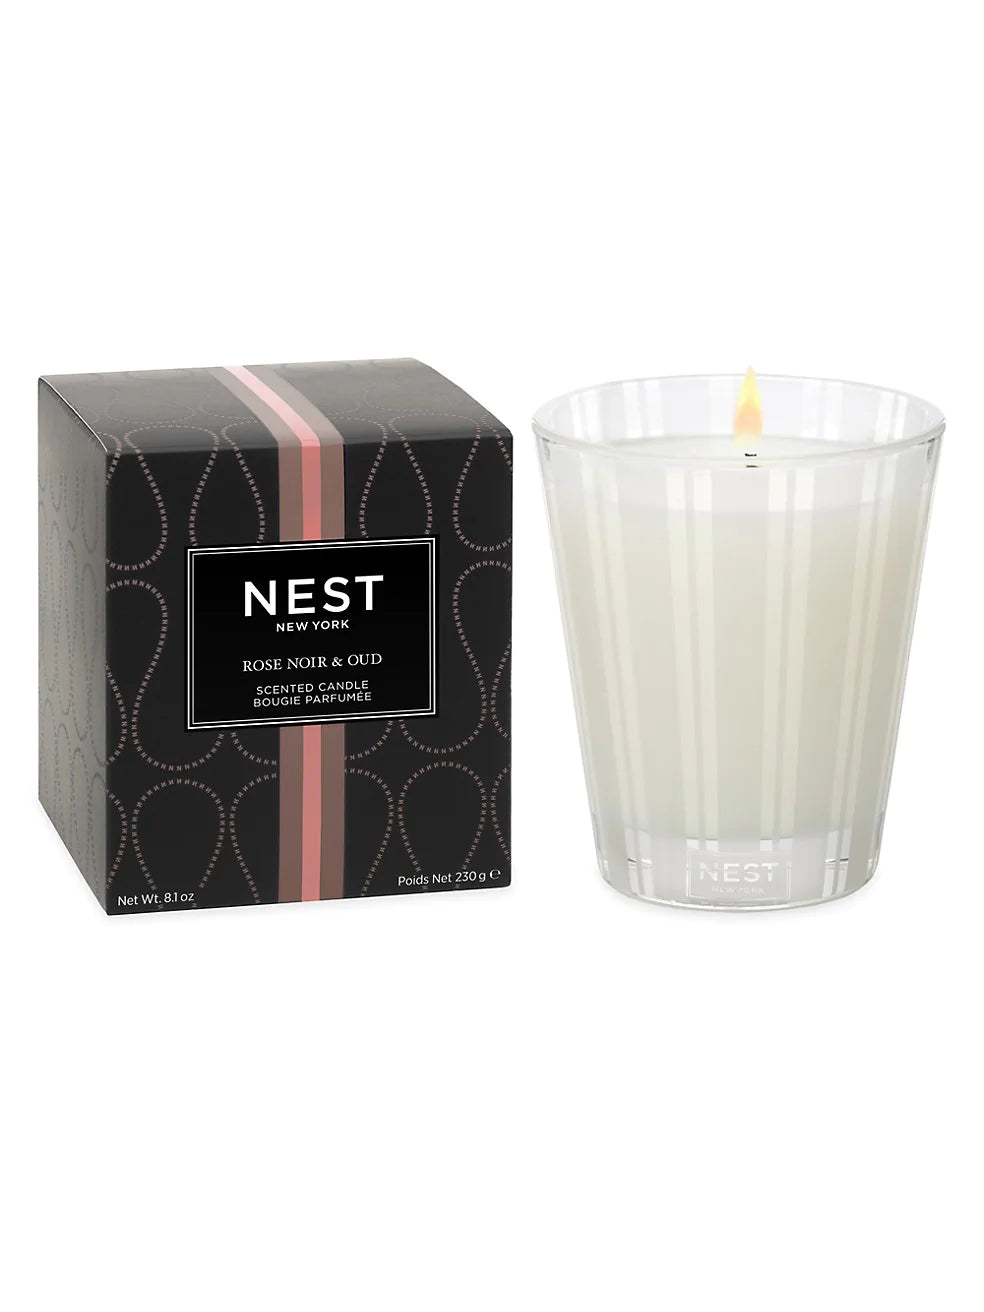 Nest- Rose Noir & Oud Candle